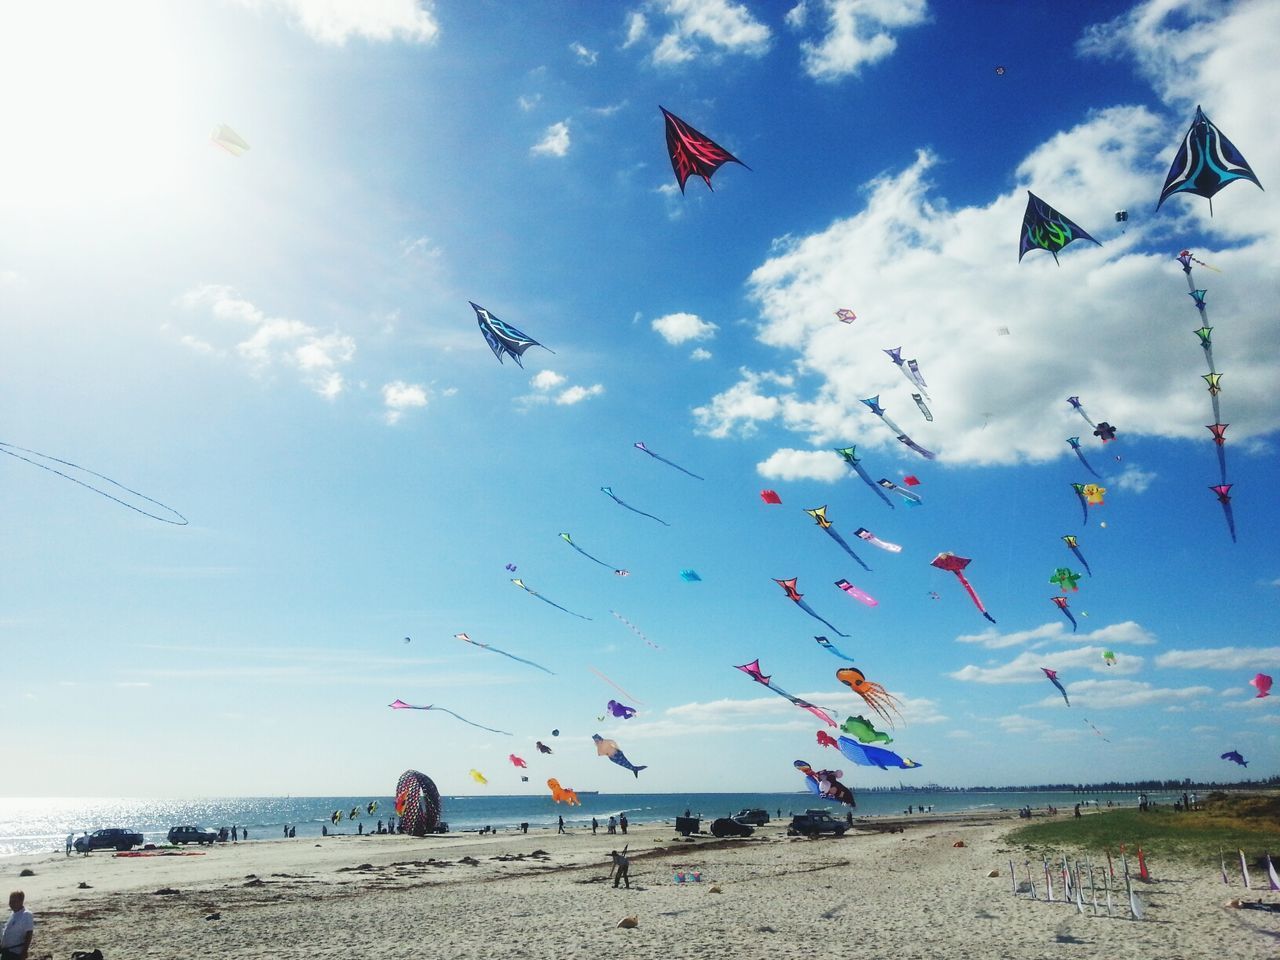 Kites being flown at beach